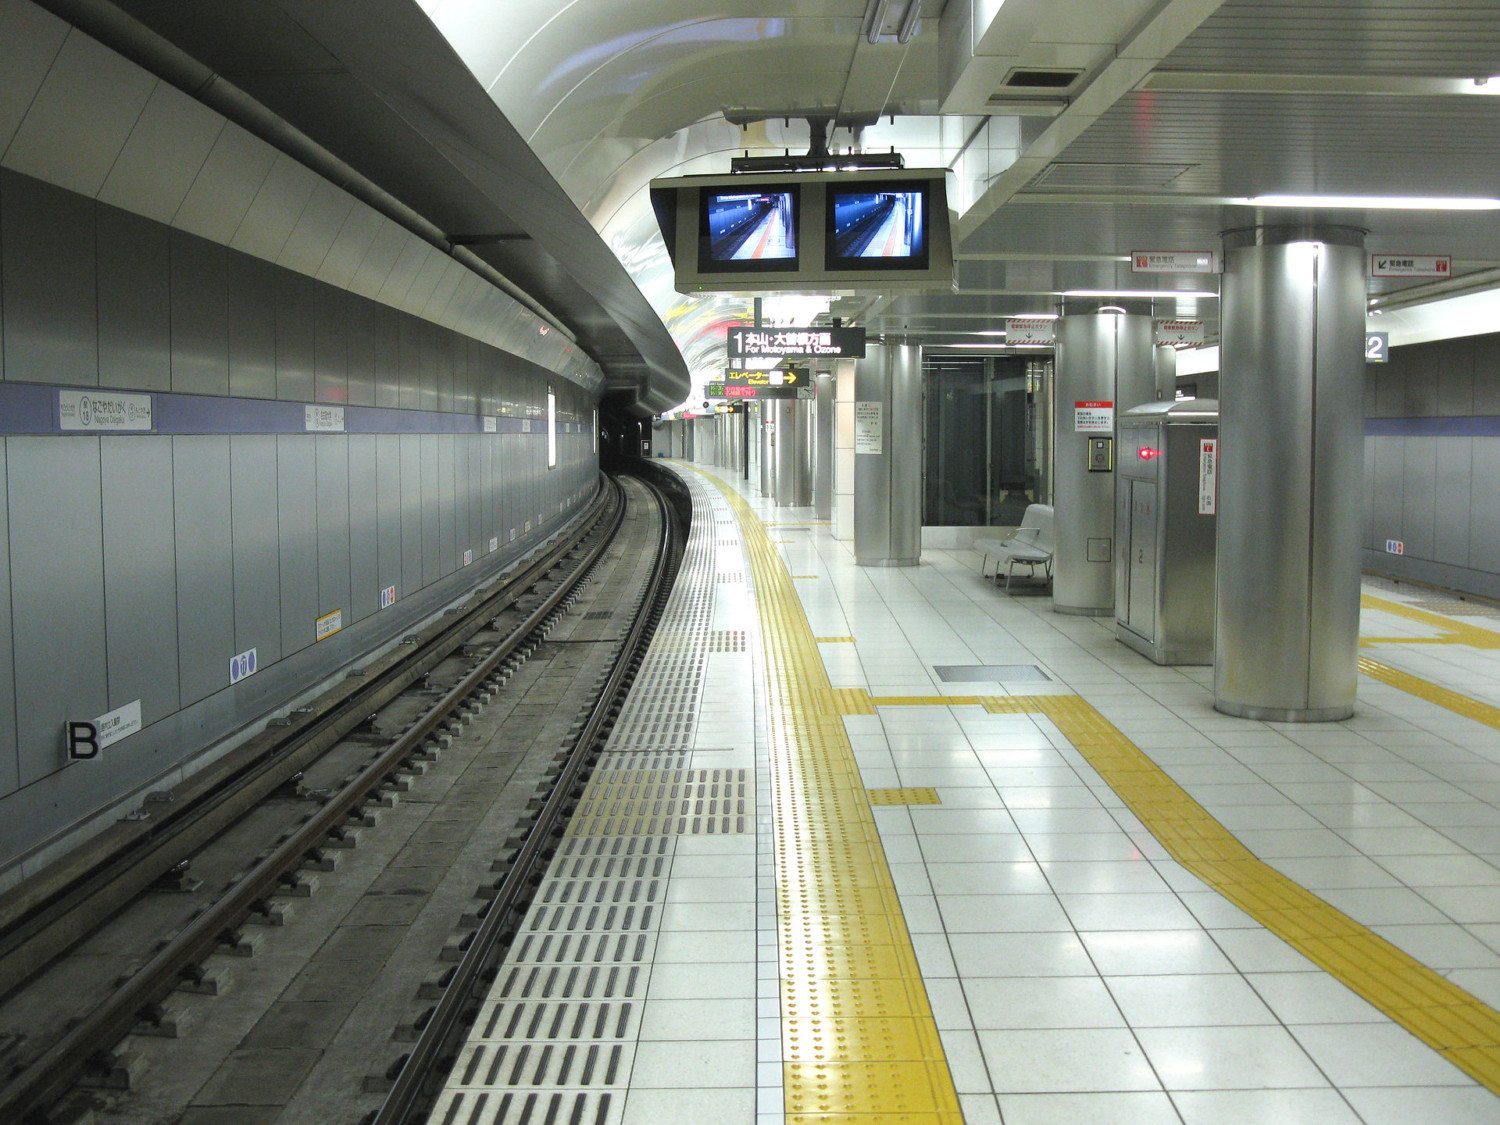 Tactile paving markers Japan subway